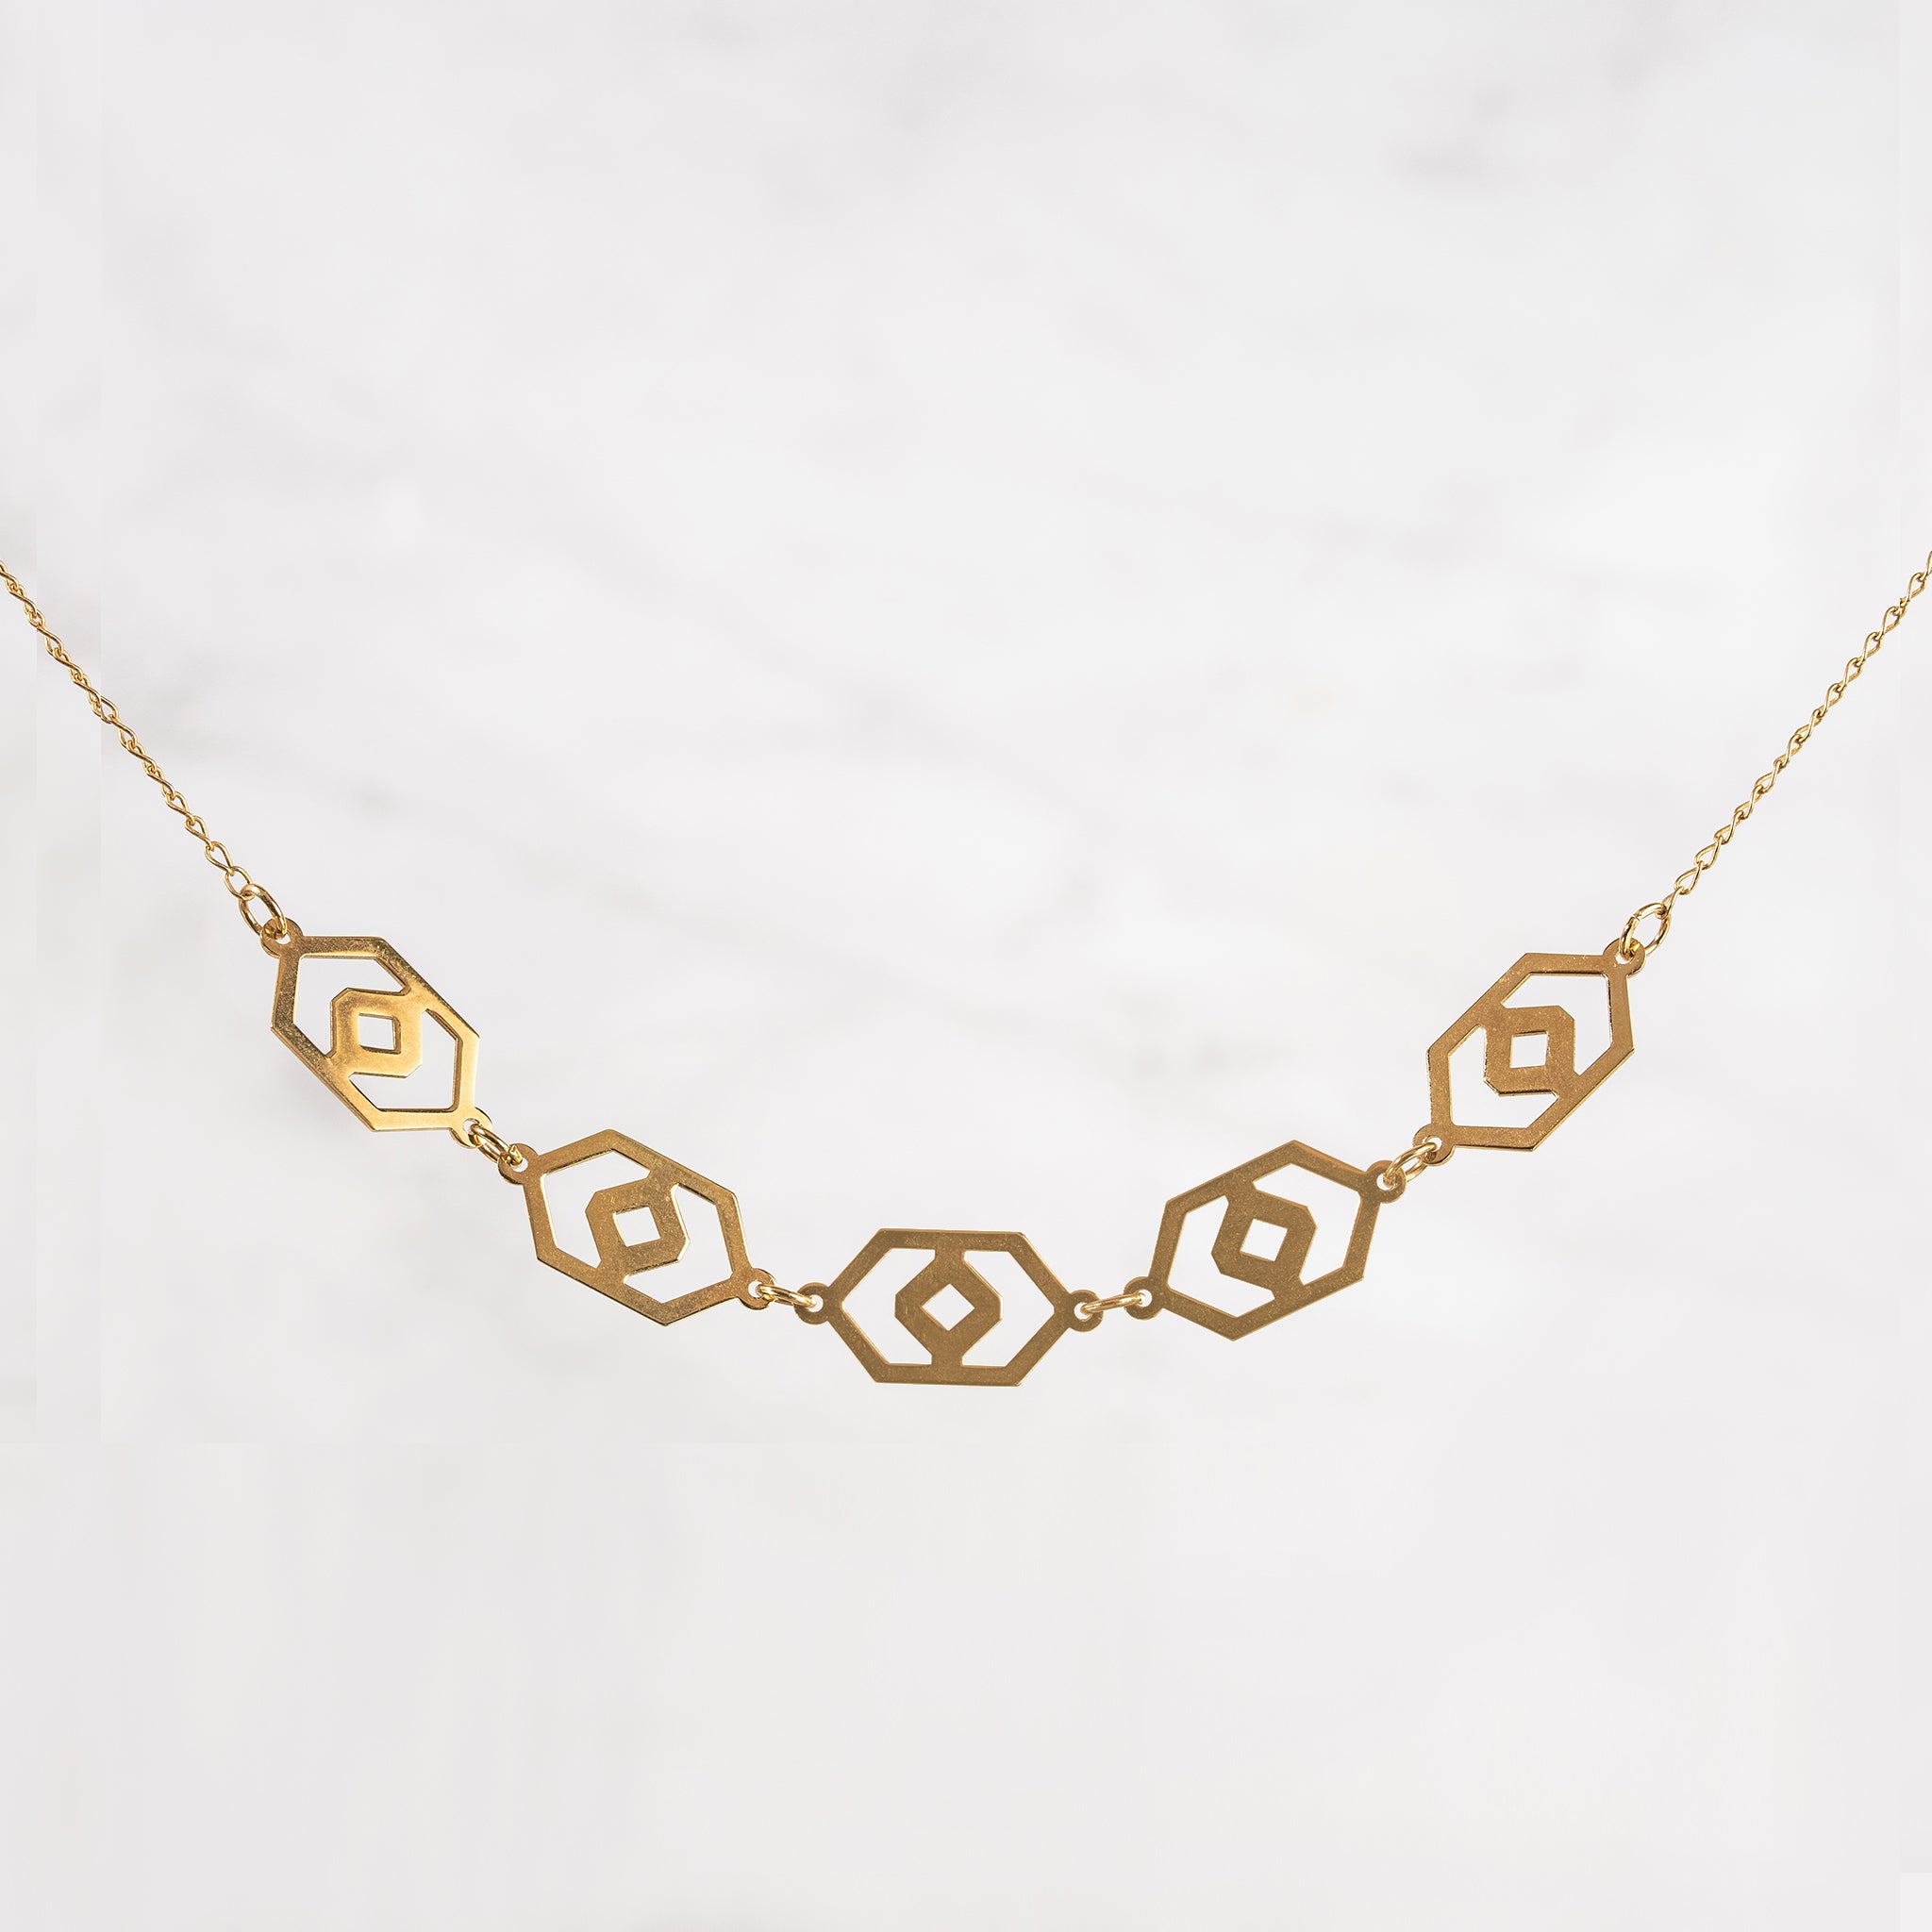 Millié Jewelry - Millié Jewelry - Huipil Choker Necklace - Collares - Diseño Mexicano - Hecho en México